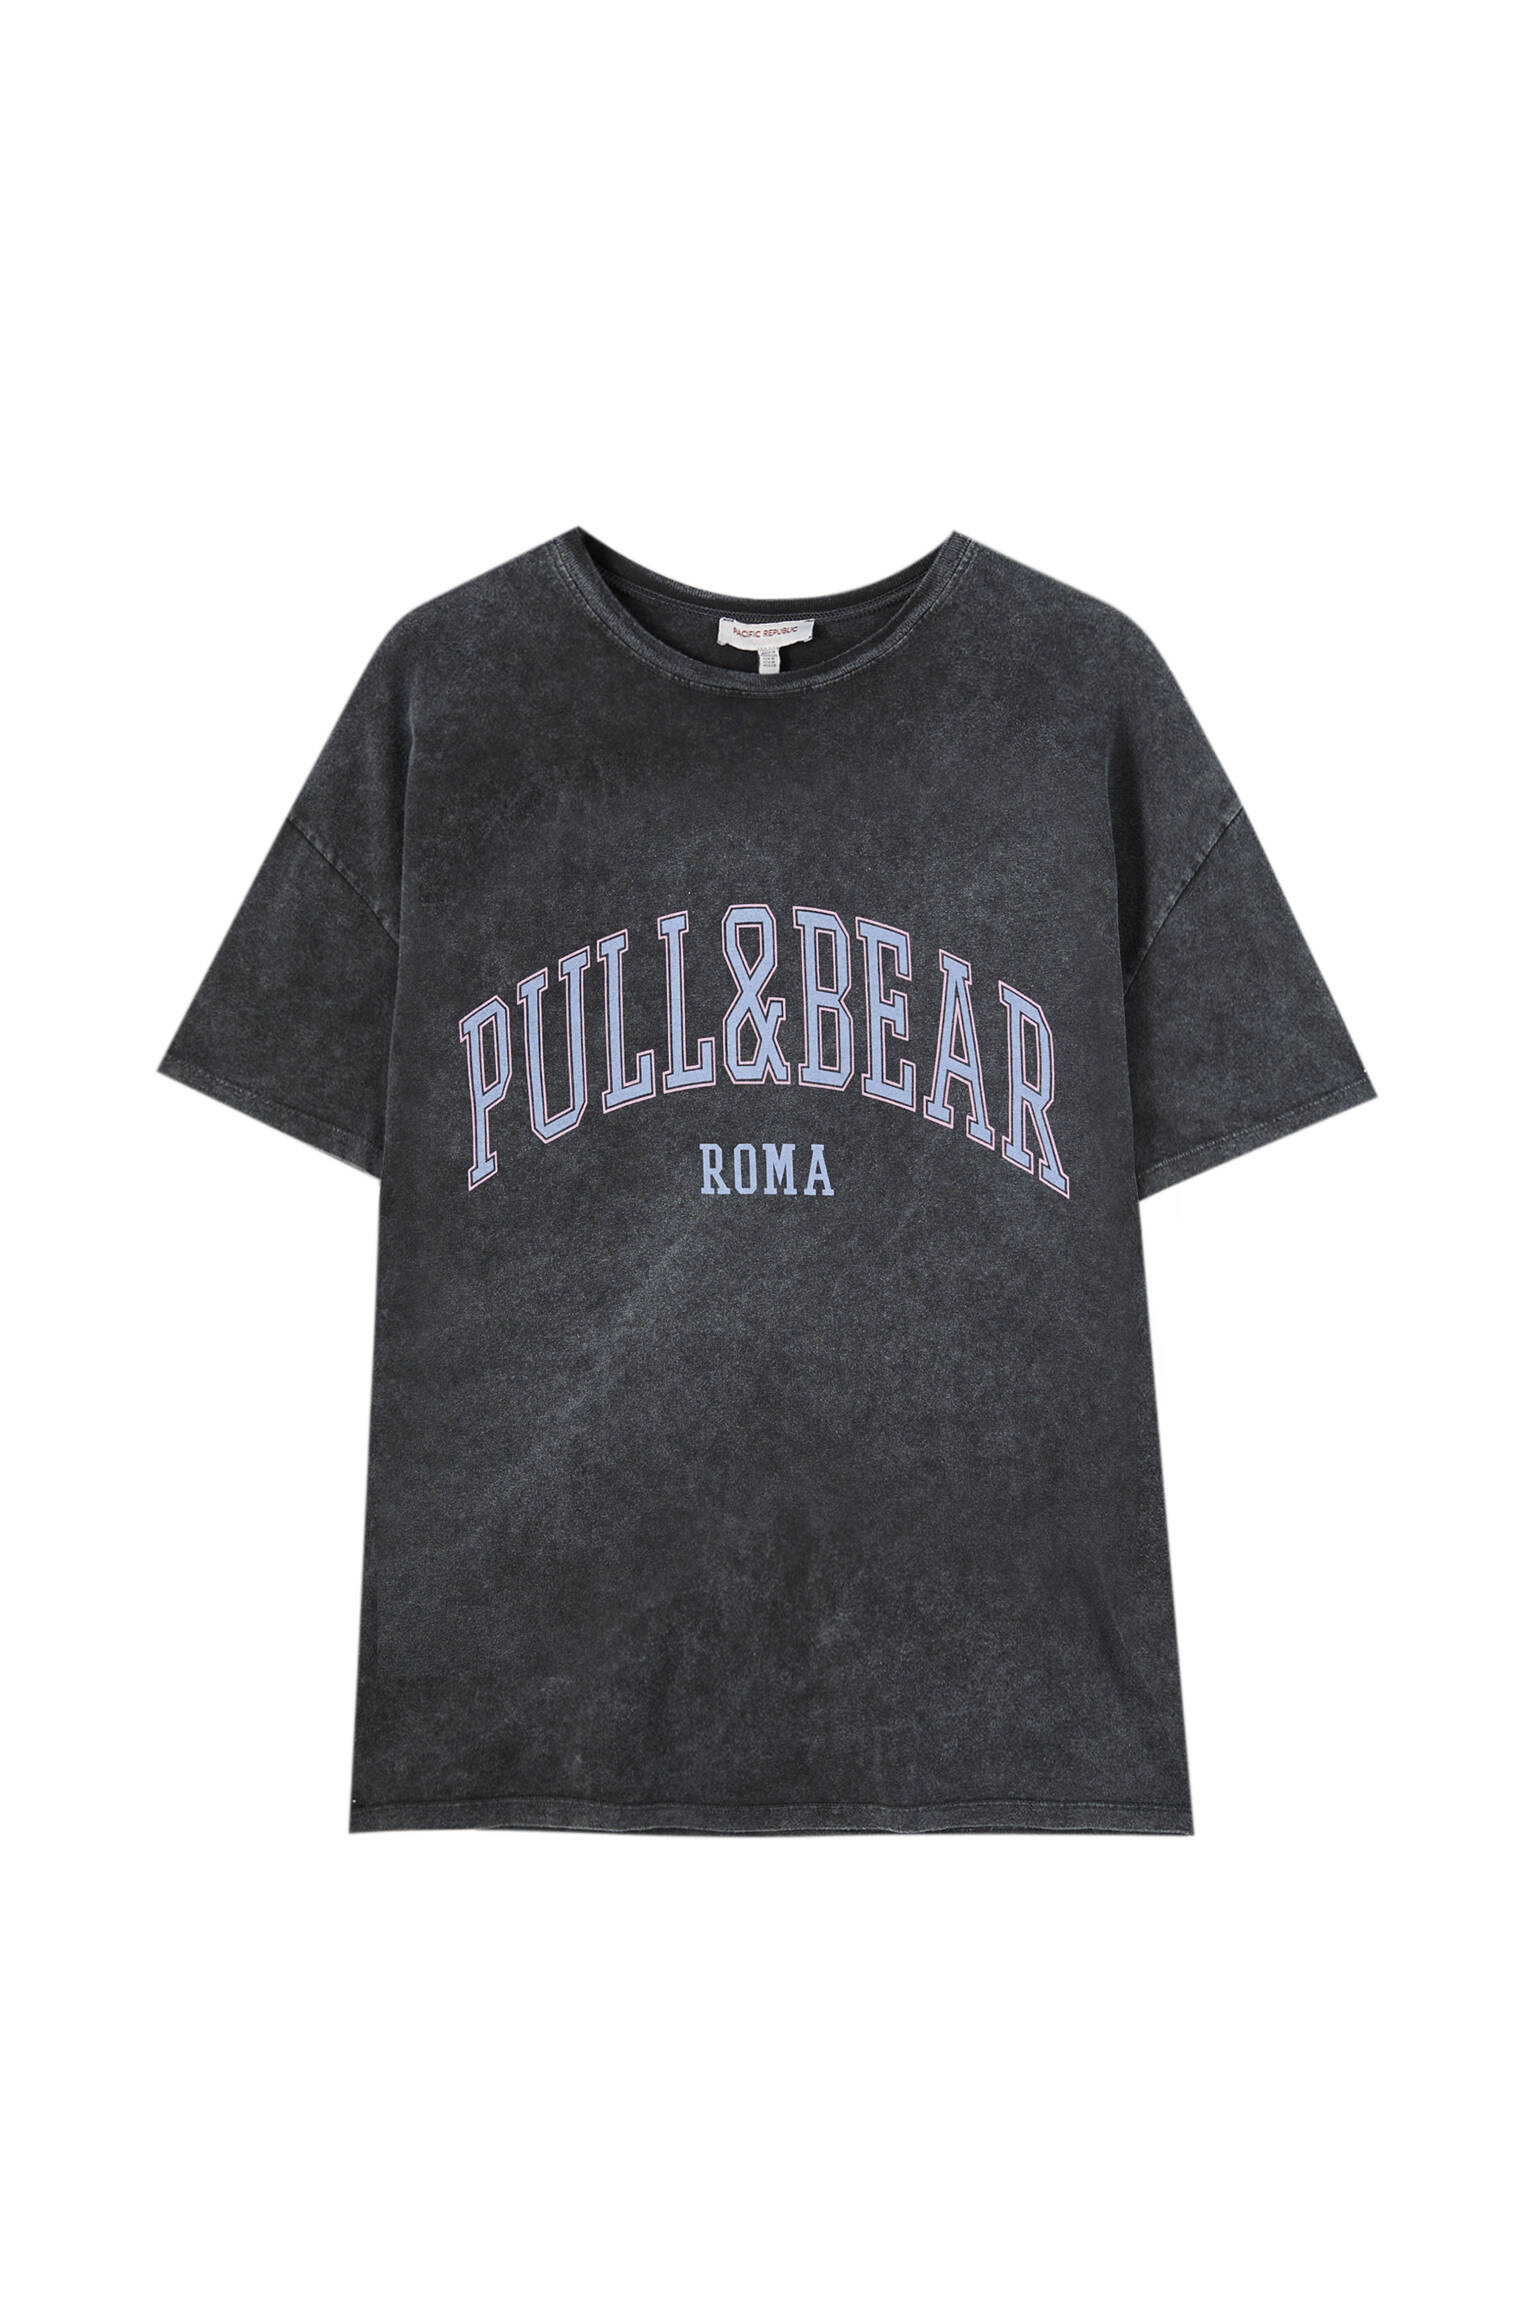 Pull&bear Femme T-shirt 100 % Coton à Col Rond Et Manches Courtes, Avec Logo Pull&bear Et Inscription Roma Contrastante Sur La Poitrine. Noir DÉlavÉ S